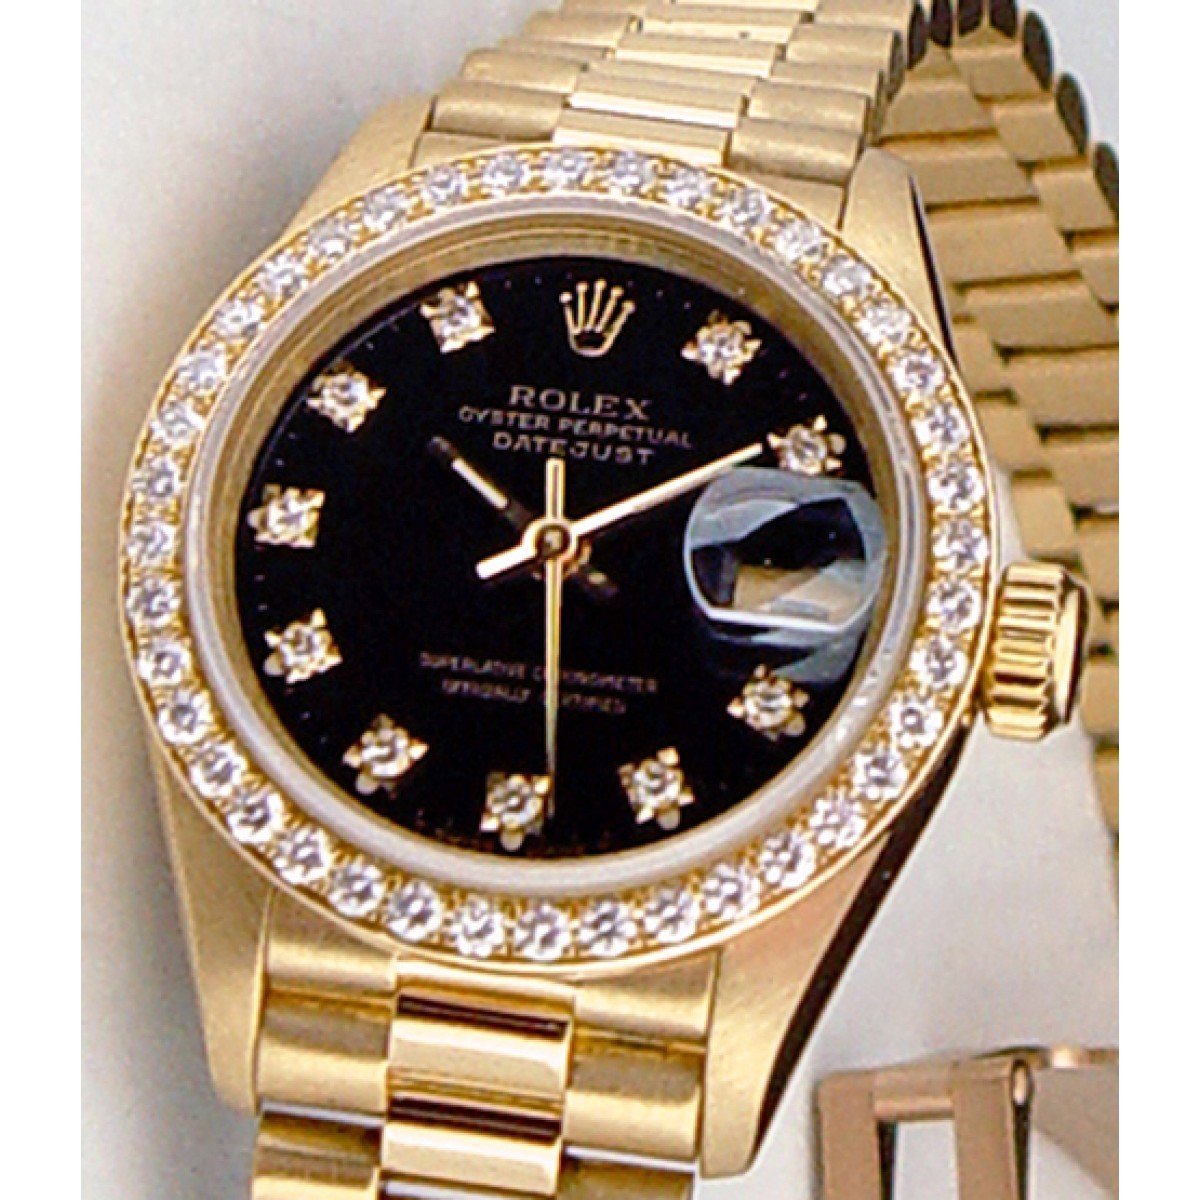 Золотой ролекс оригинал. Золотые часы мужские швейцарские ролекс. Часы ролекс золотые с бриллиантами мужские. Rolex Datejust 36 с бриллиантами черный циферблат. Золотые часы ролекс мужские оригинал.